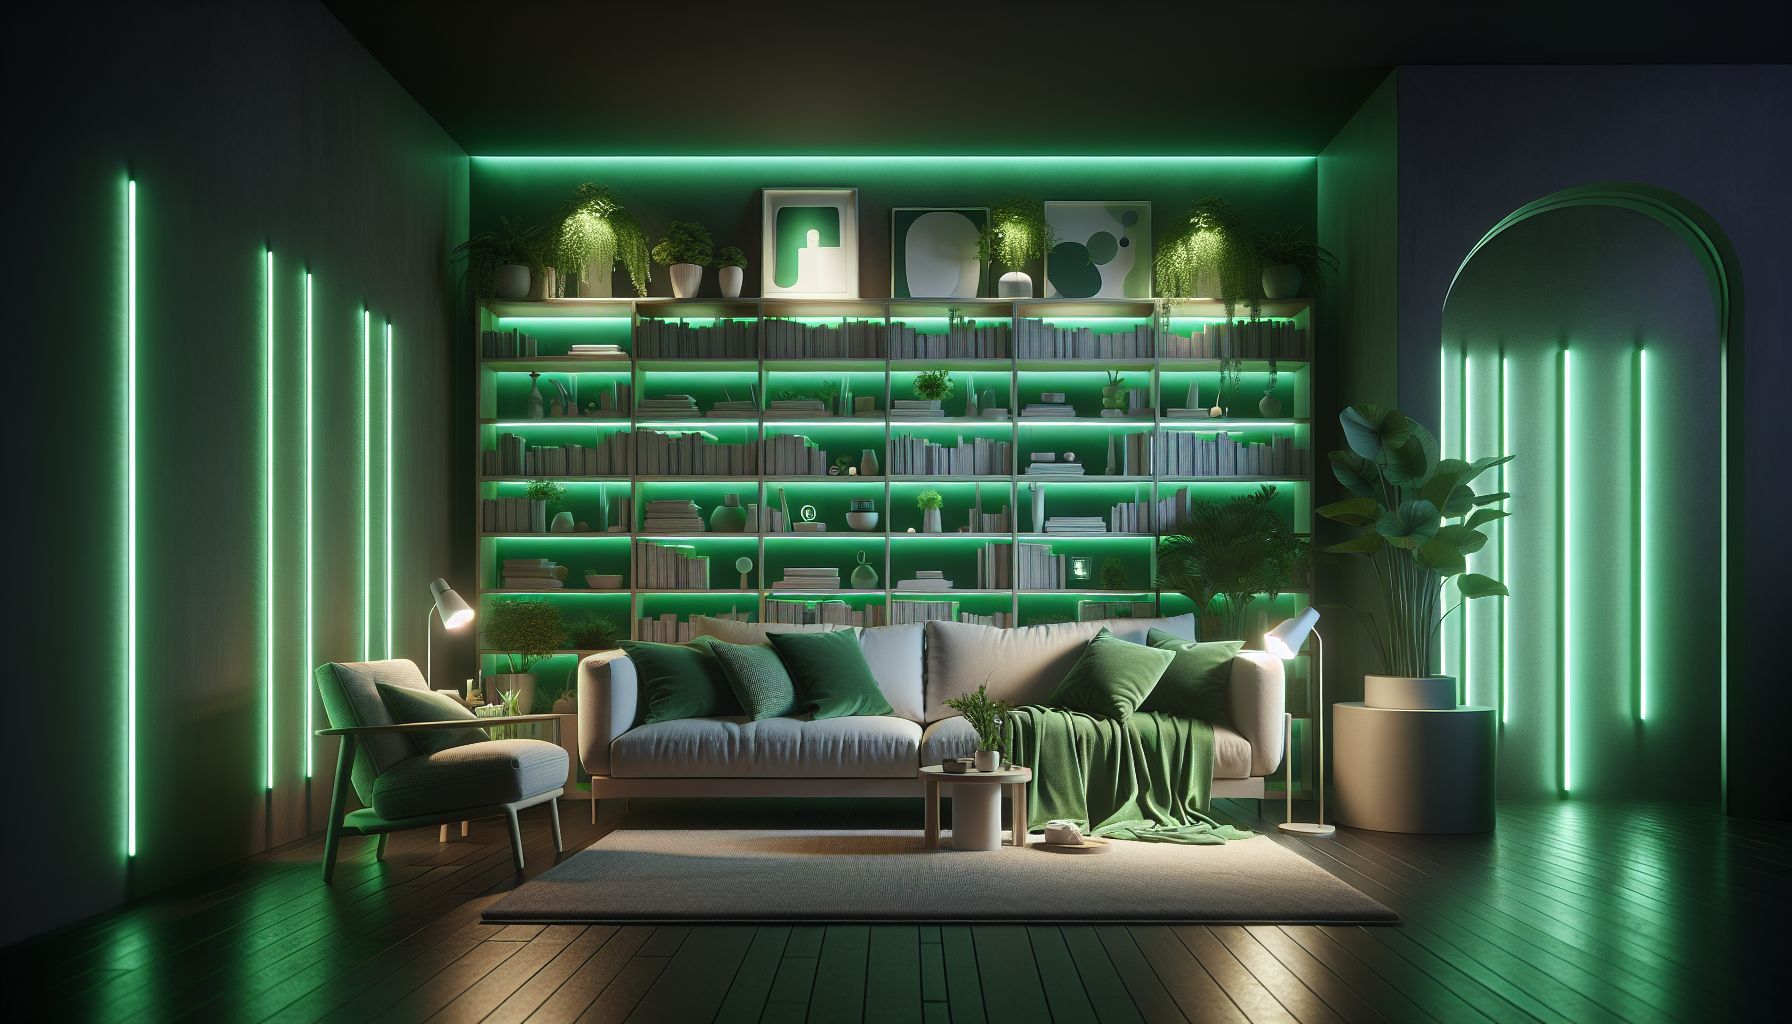 Wohnzimmer in Grün: Ideen und Inspiration- Experimentiere mit grünen Beleuchtungseffekten